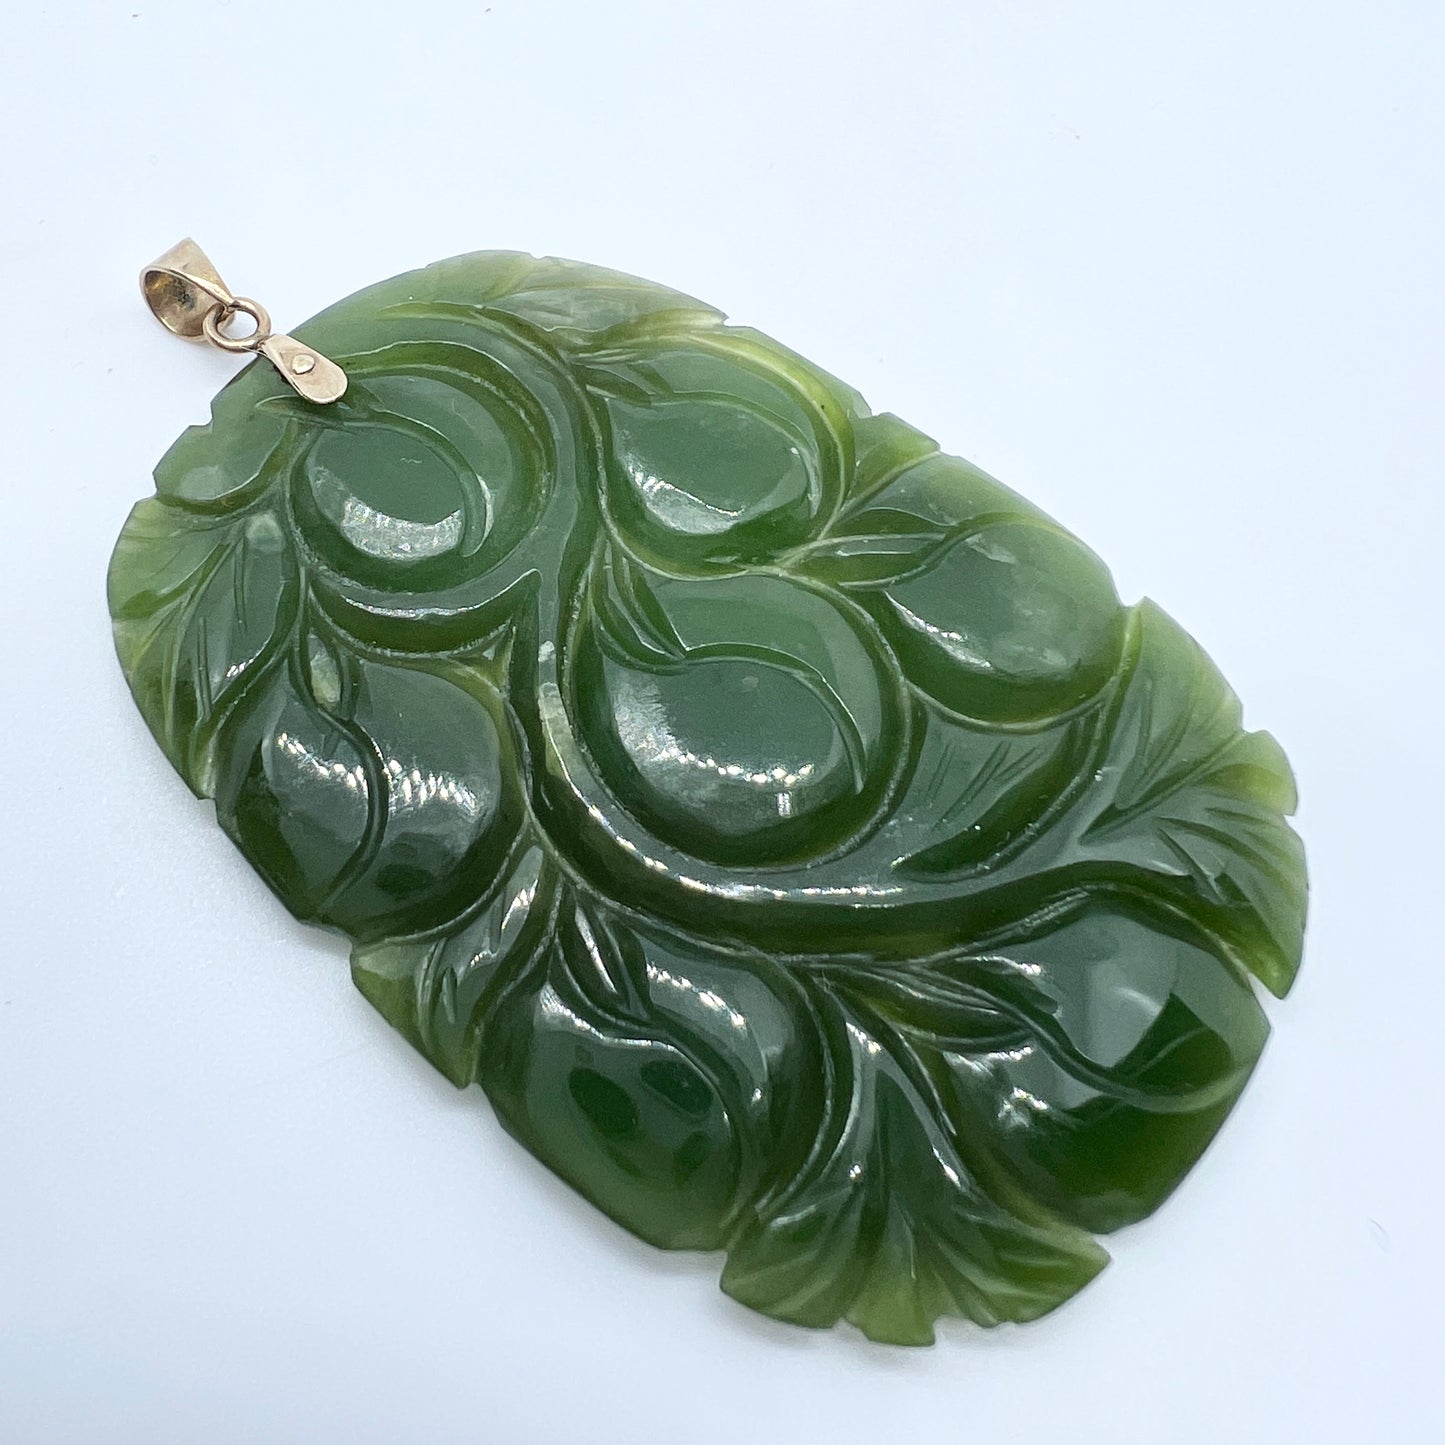 China. Vintage 18k Gold Carved Jade Large Pendant.